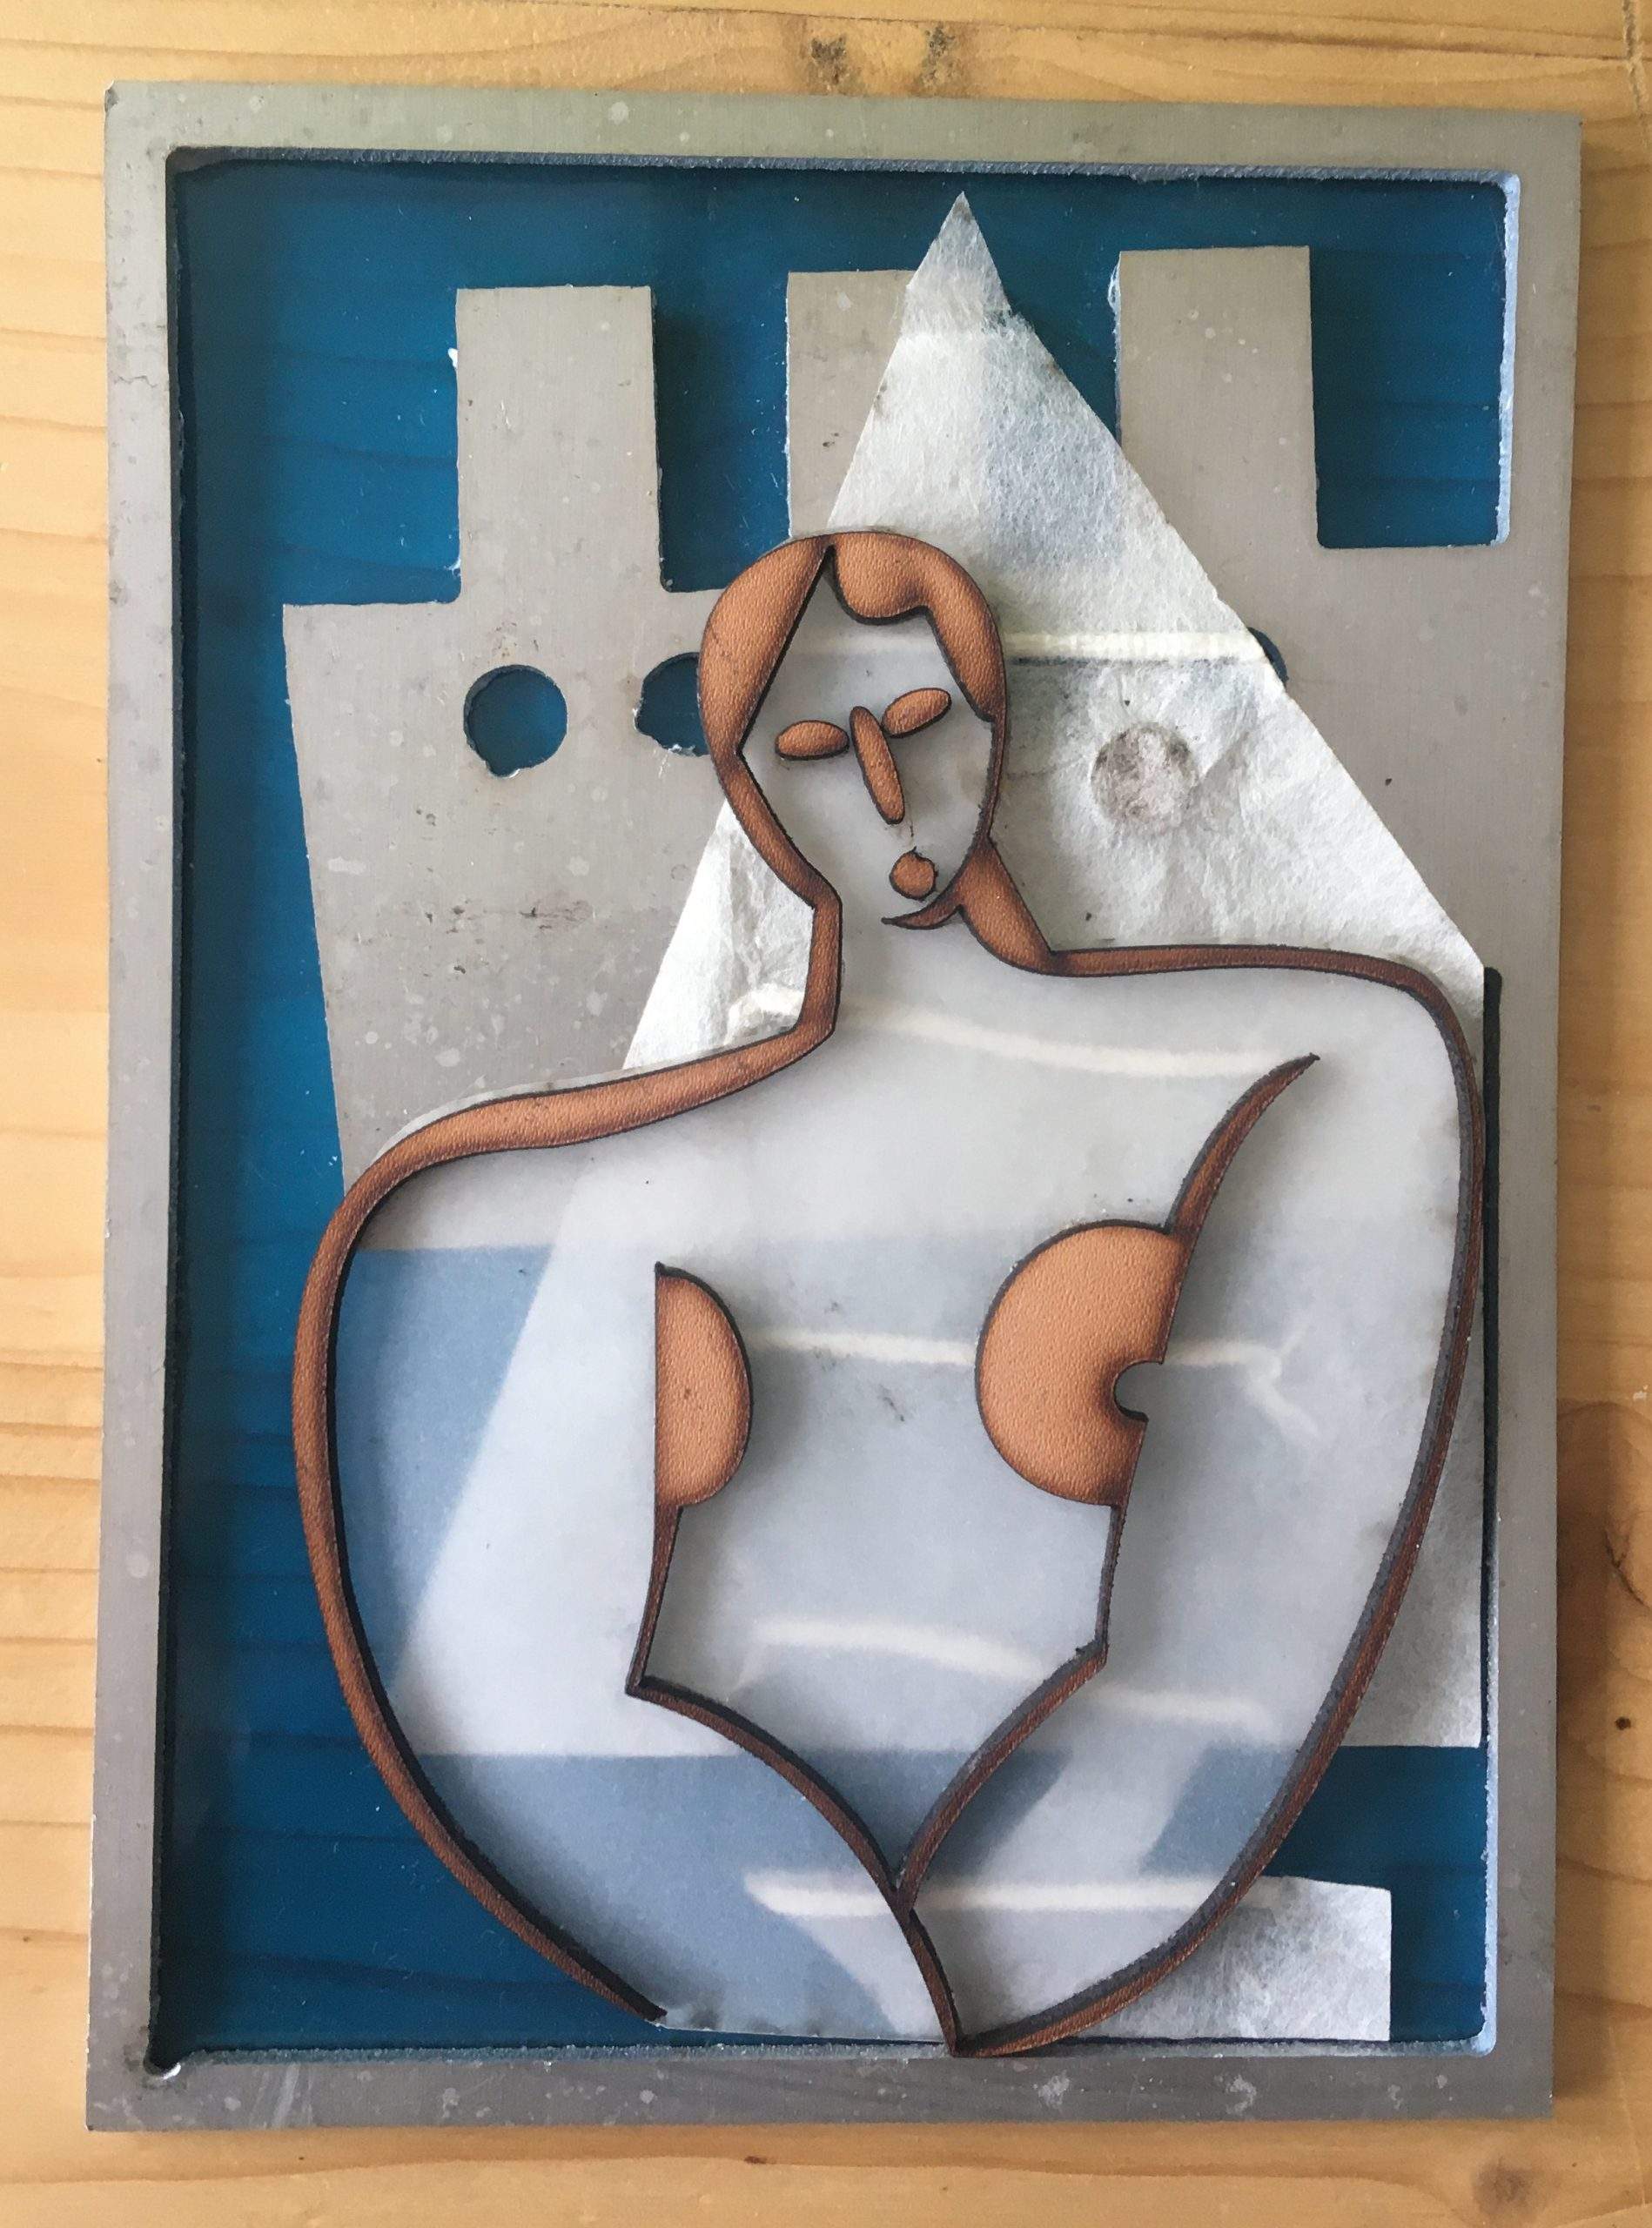 Image tactile - proposition tactile de l'œuvre de Marcelle Cahn, La femme et la bateau en 3 plans utilisant des matériaux spécifiques (cuire, métal, papier)